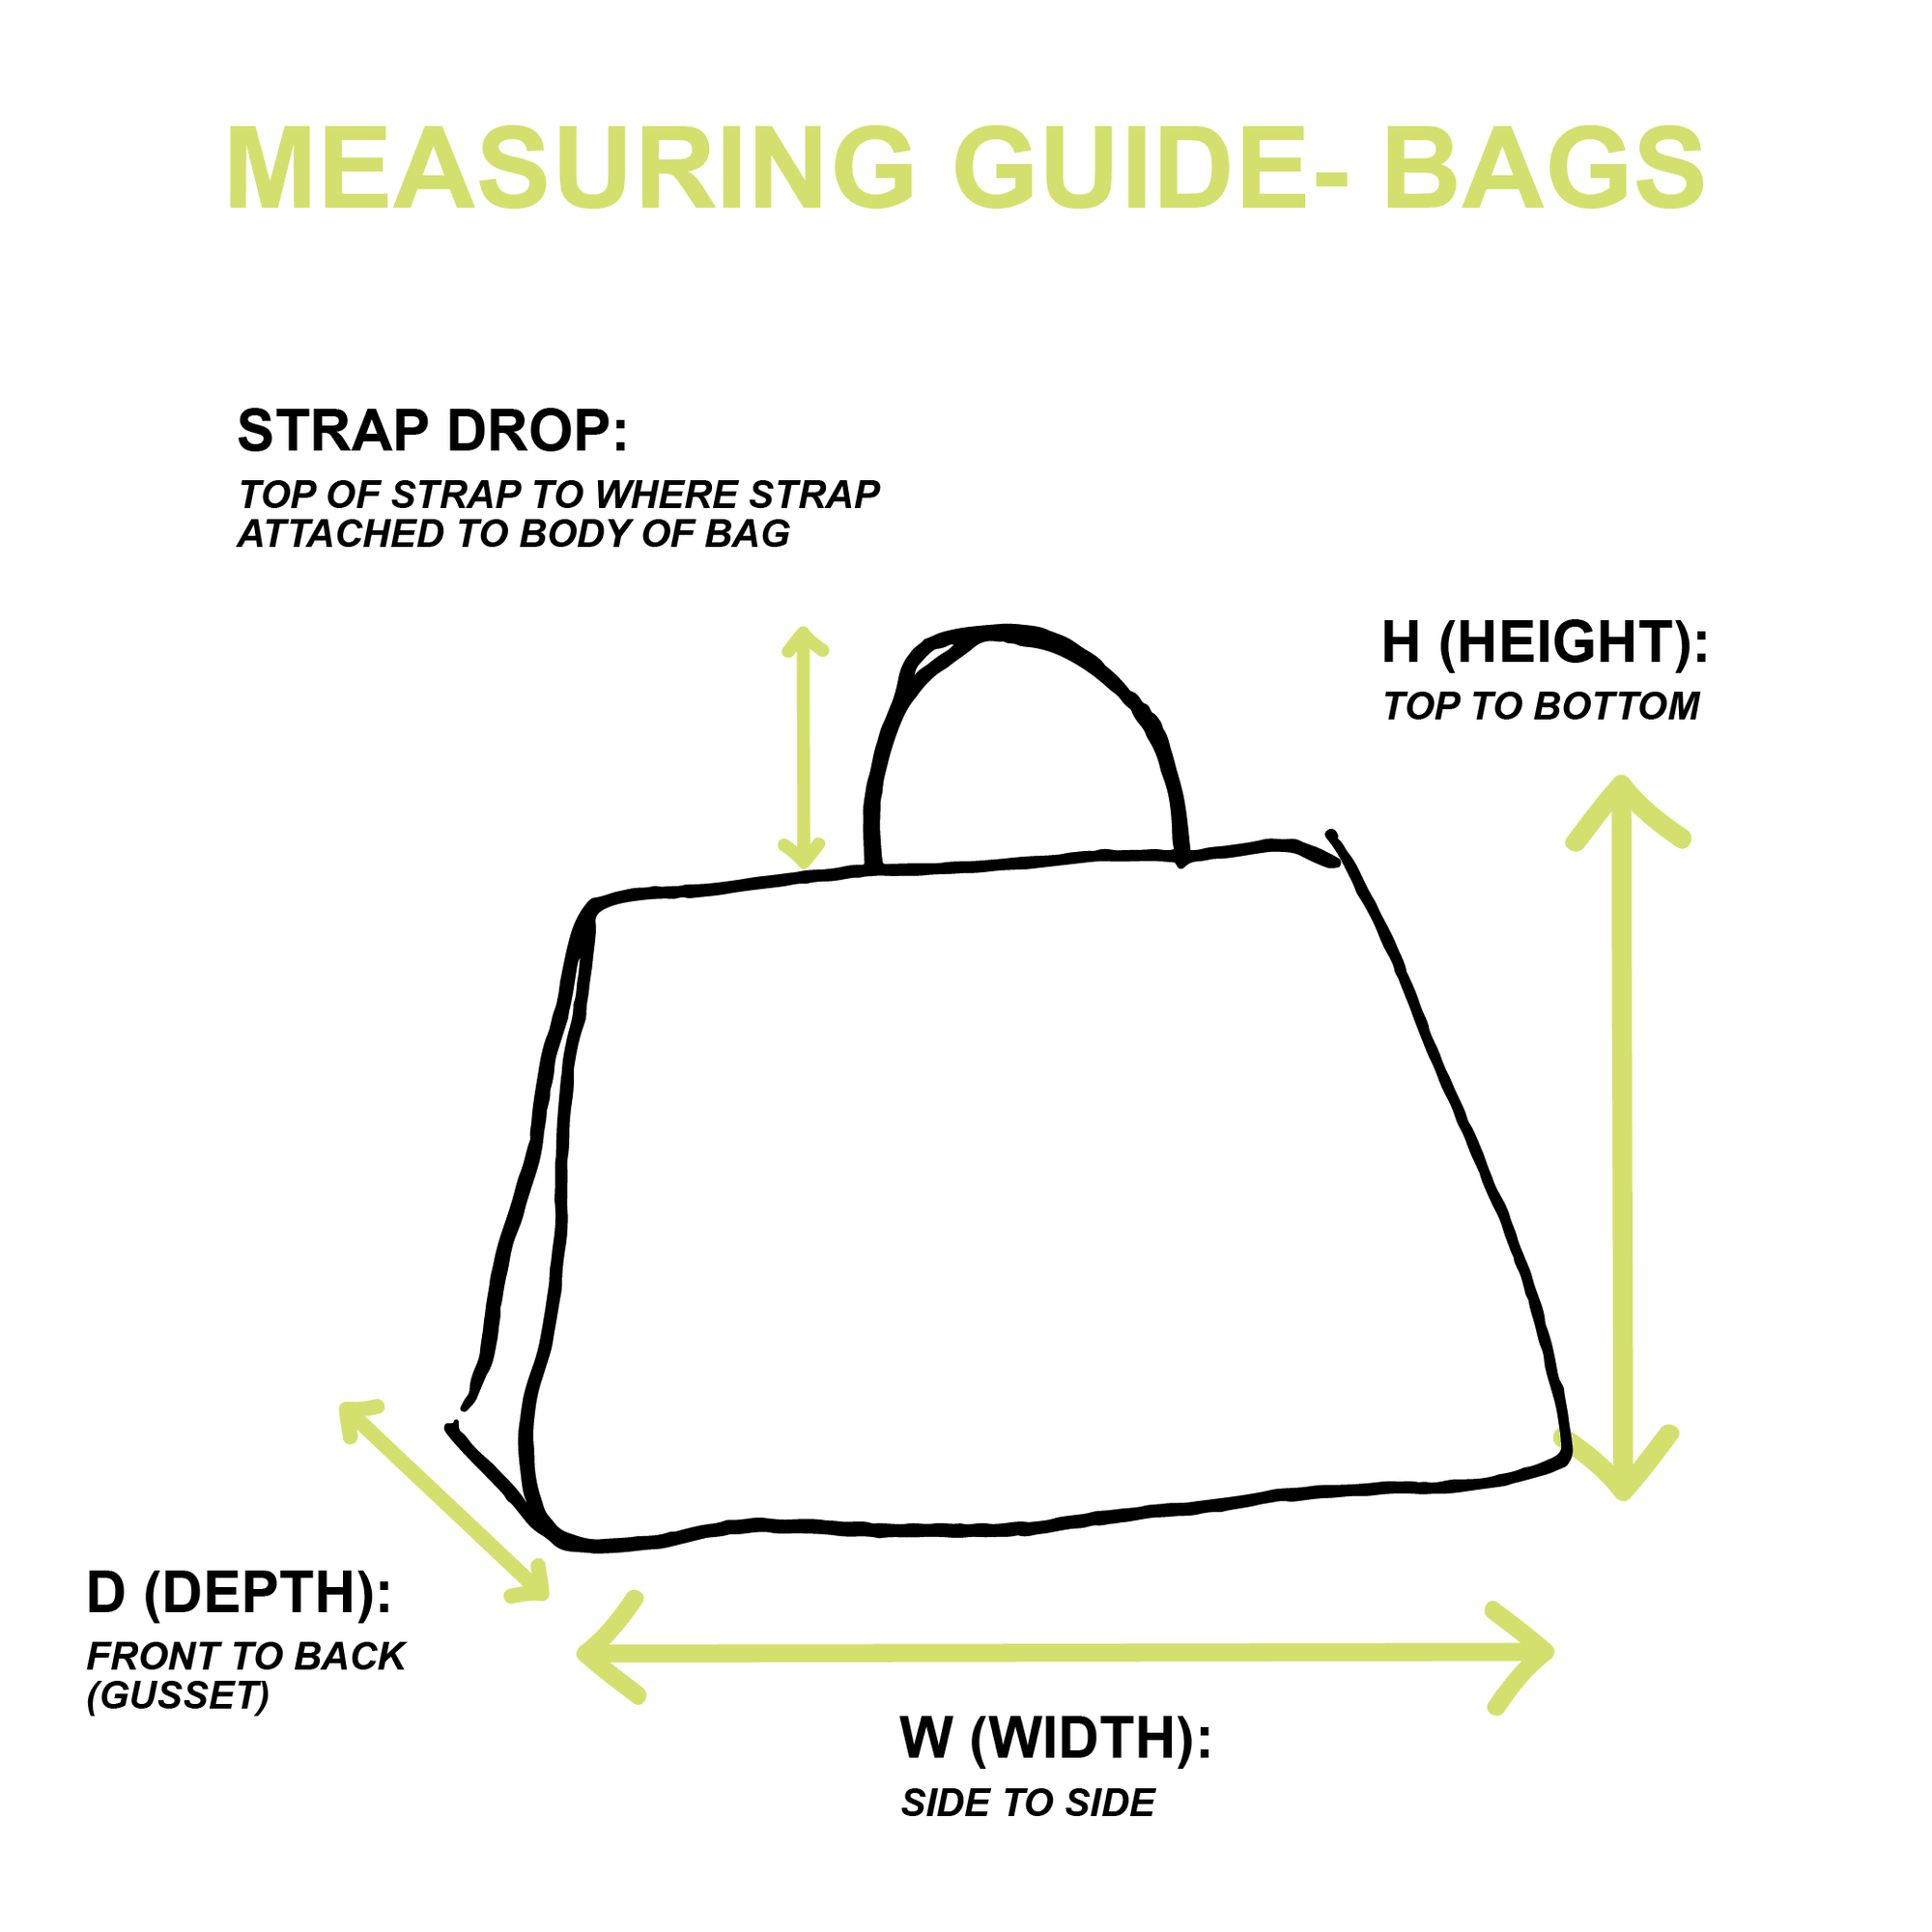 Chanel Pearlized Logo Small Boston Bag - Handbags